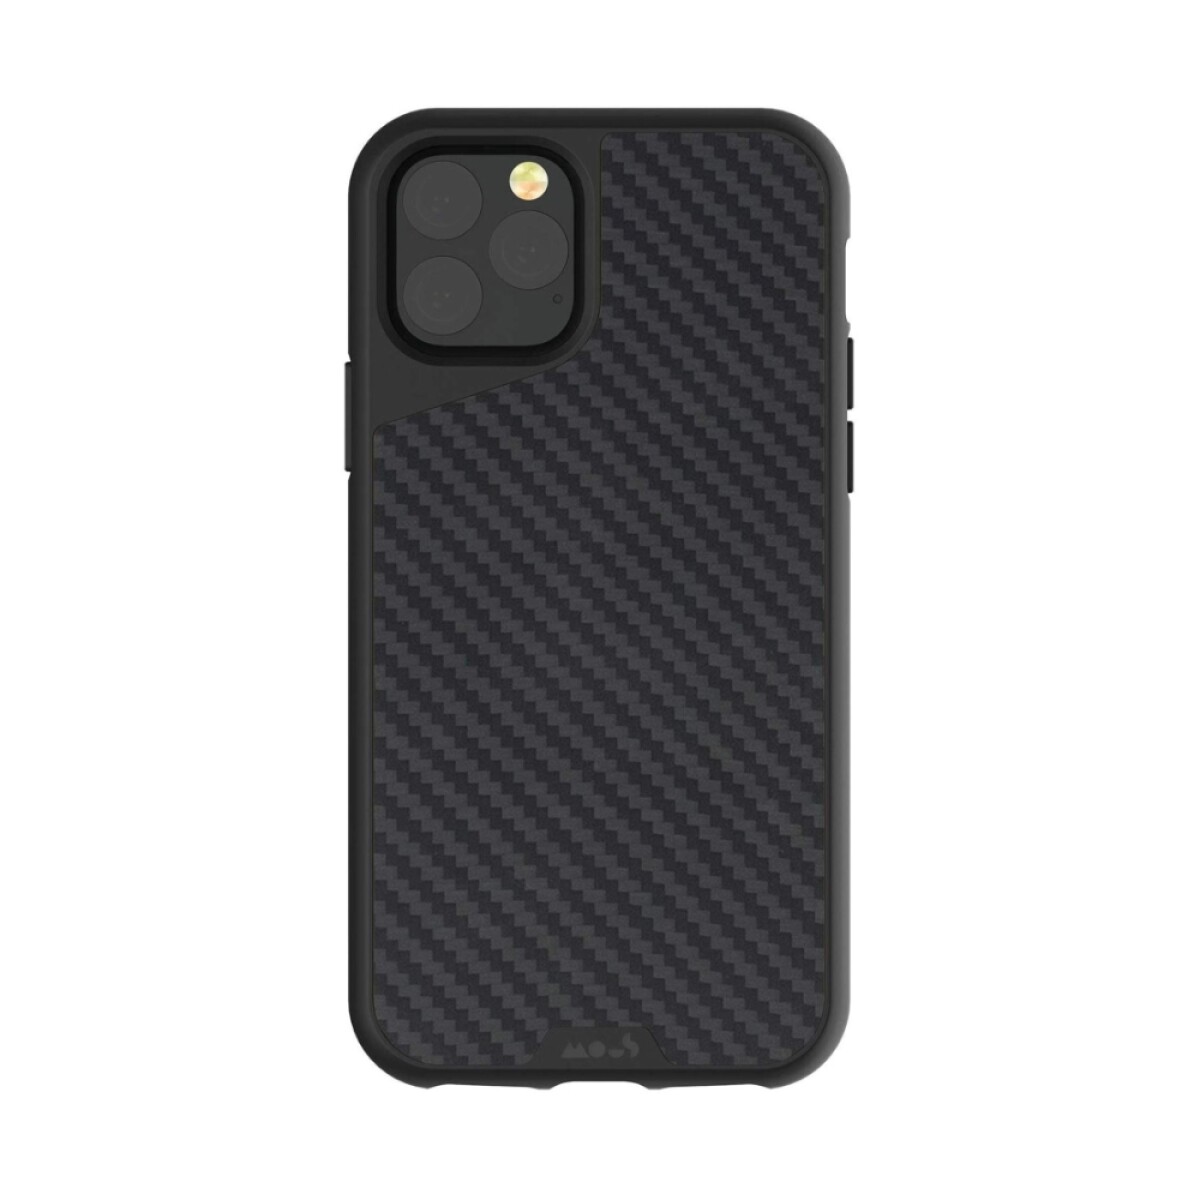 Mous case limitless 3.0 iphone 12 pro max Fibra de carbono